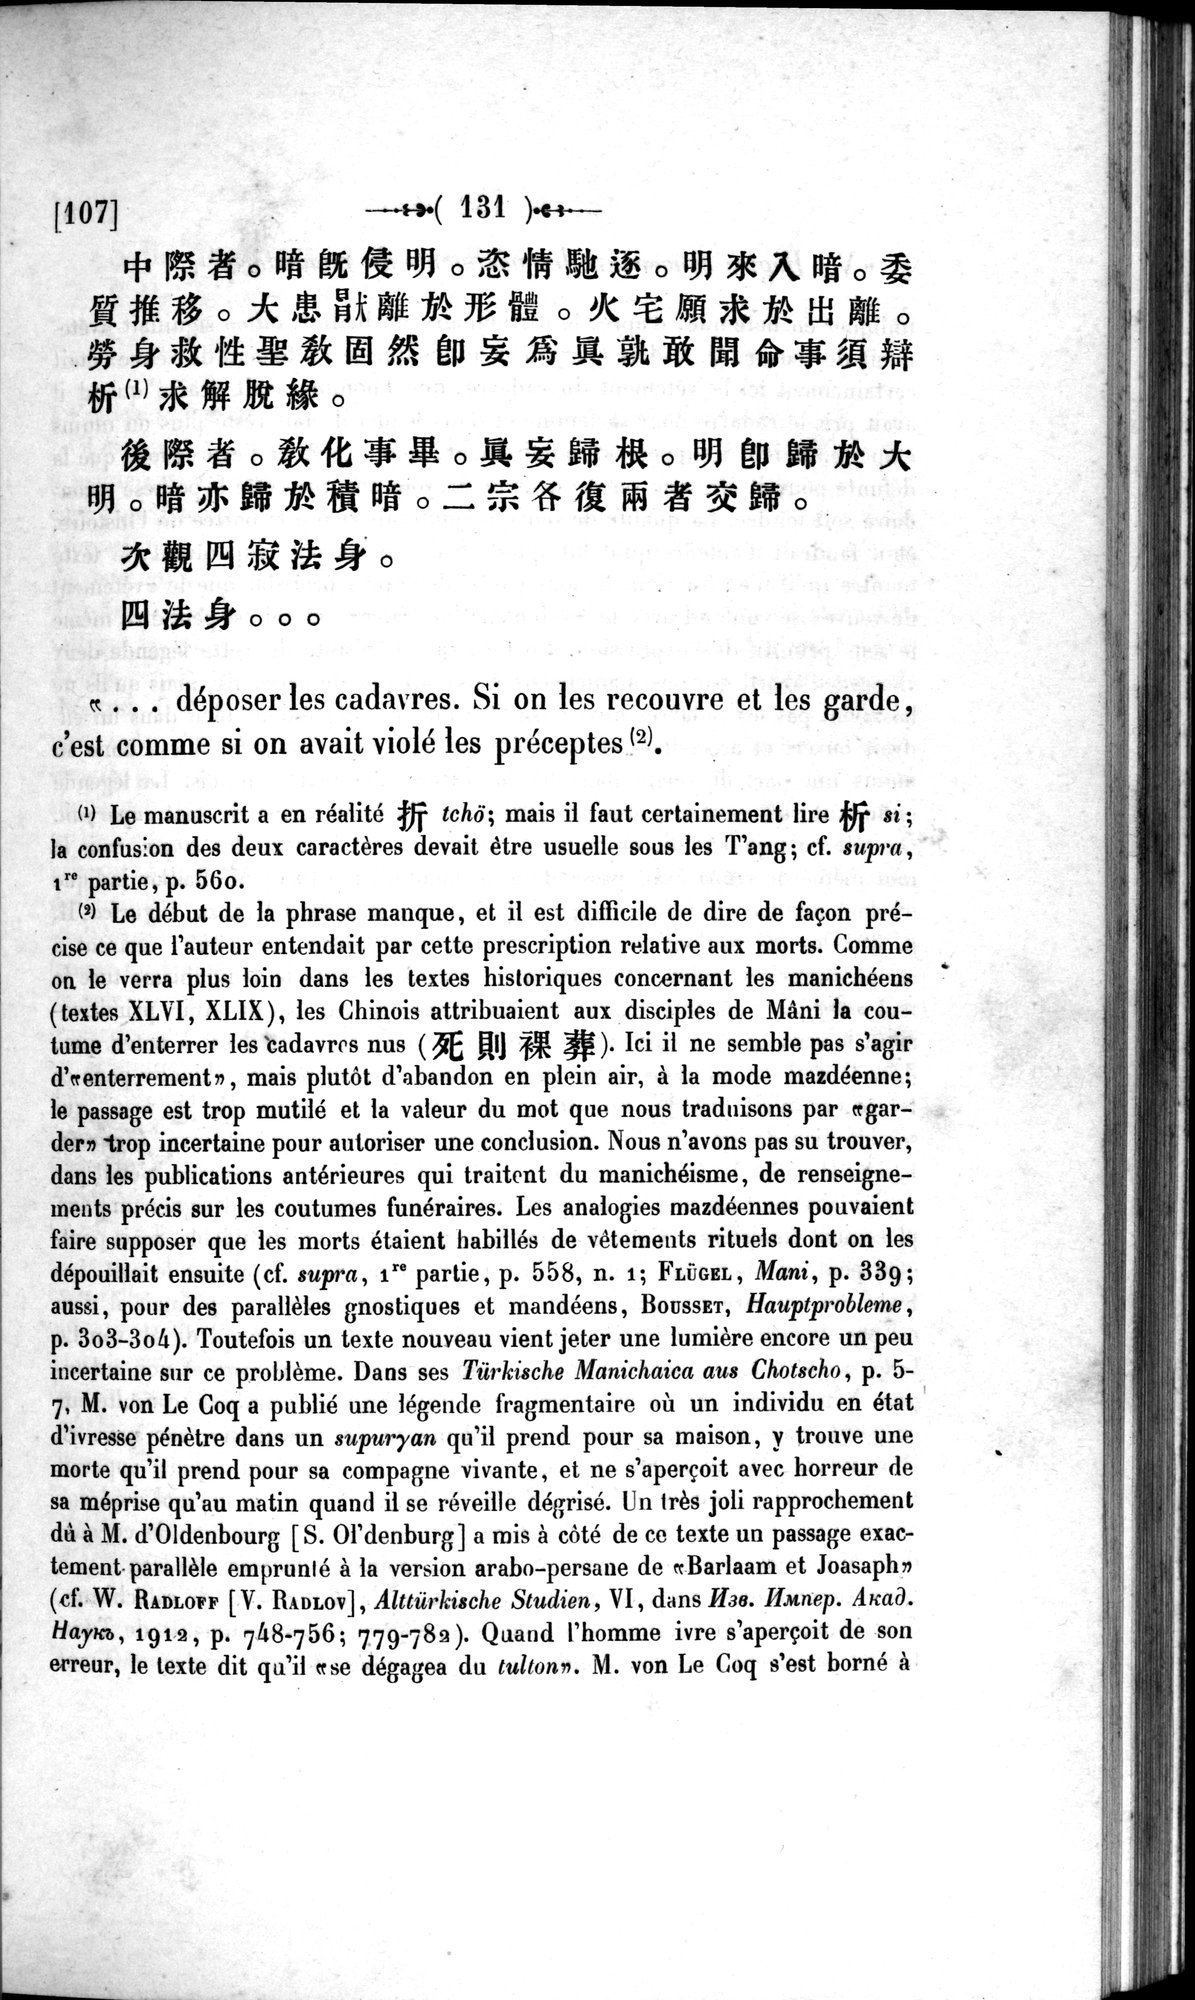 Un traité manichéen retrouvé en Chine : vol.1 / Page 141 (Grayscale High Resolution Image)